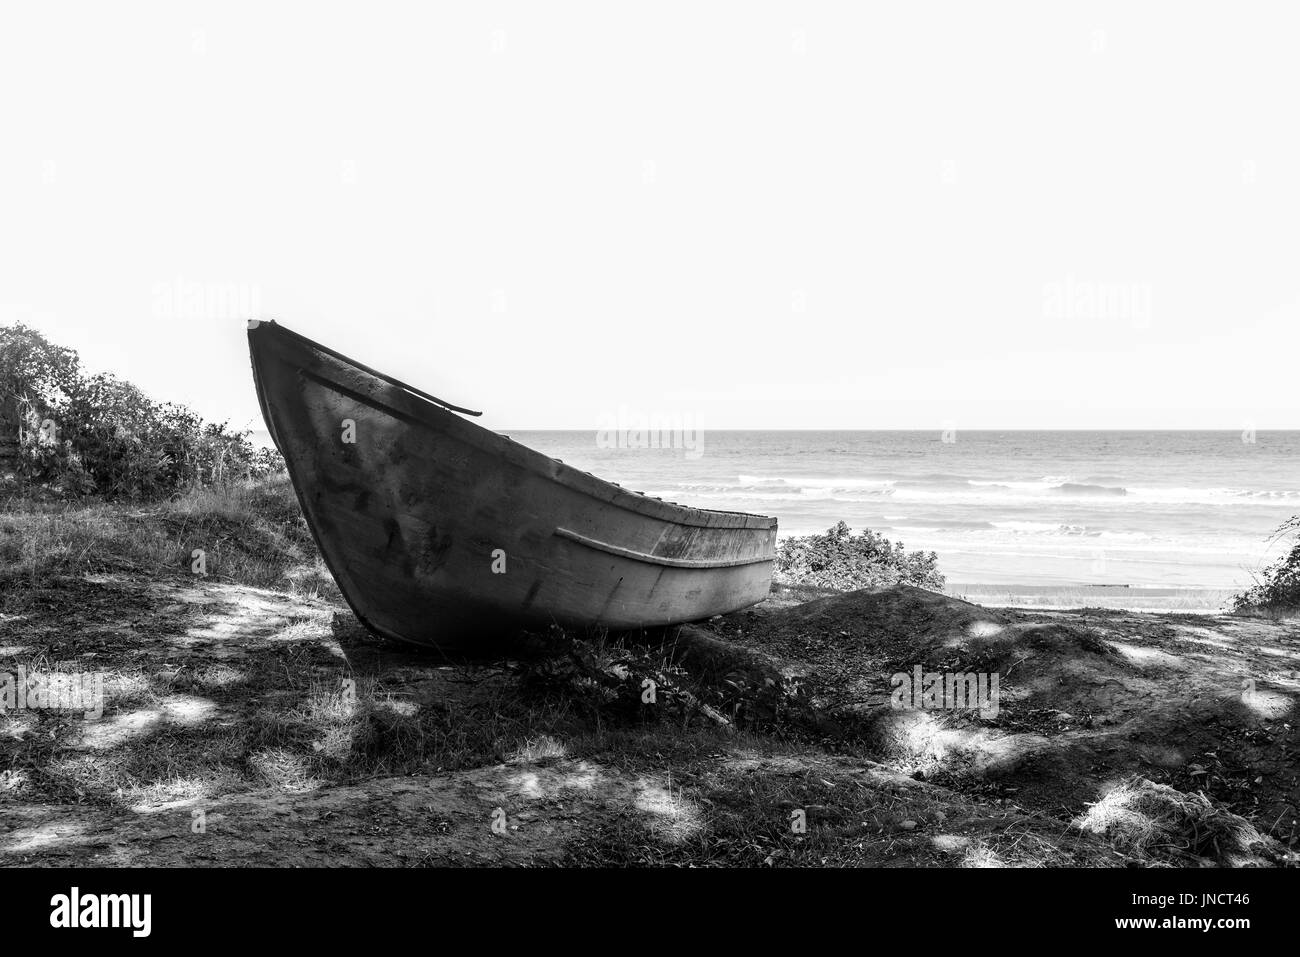 Old abandoned fishing boat on coast Stock Photo